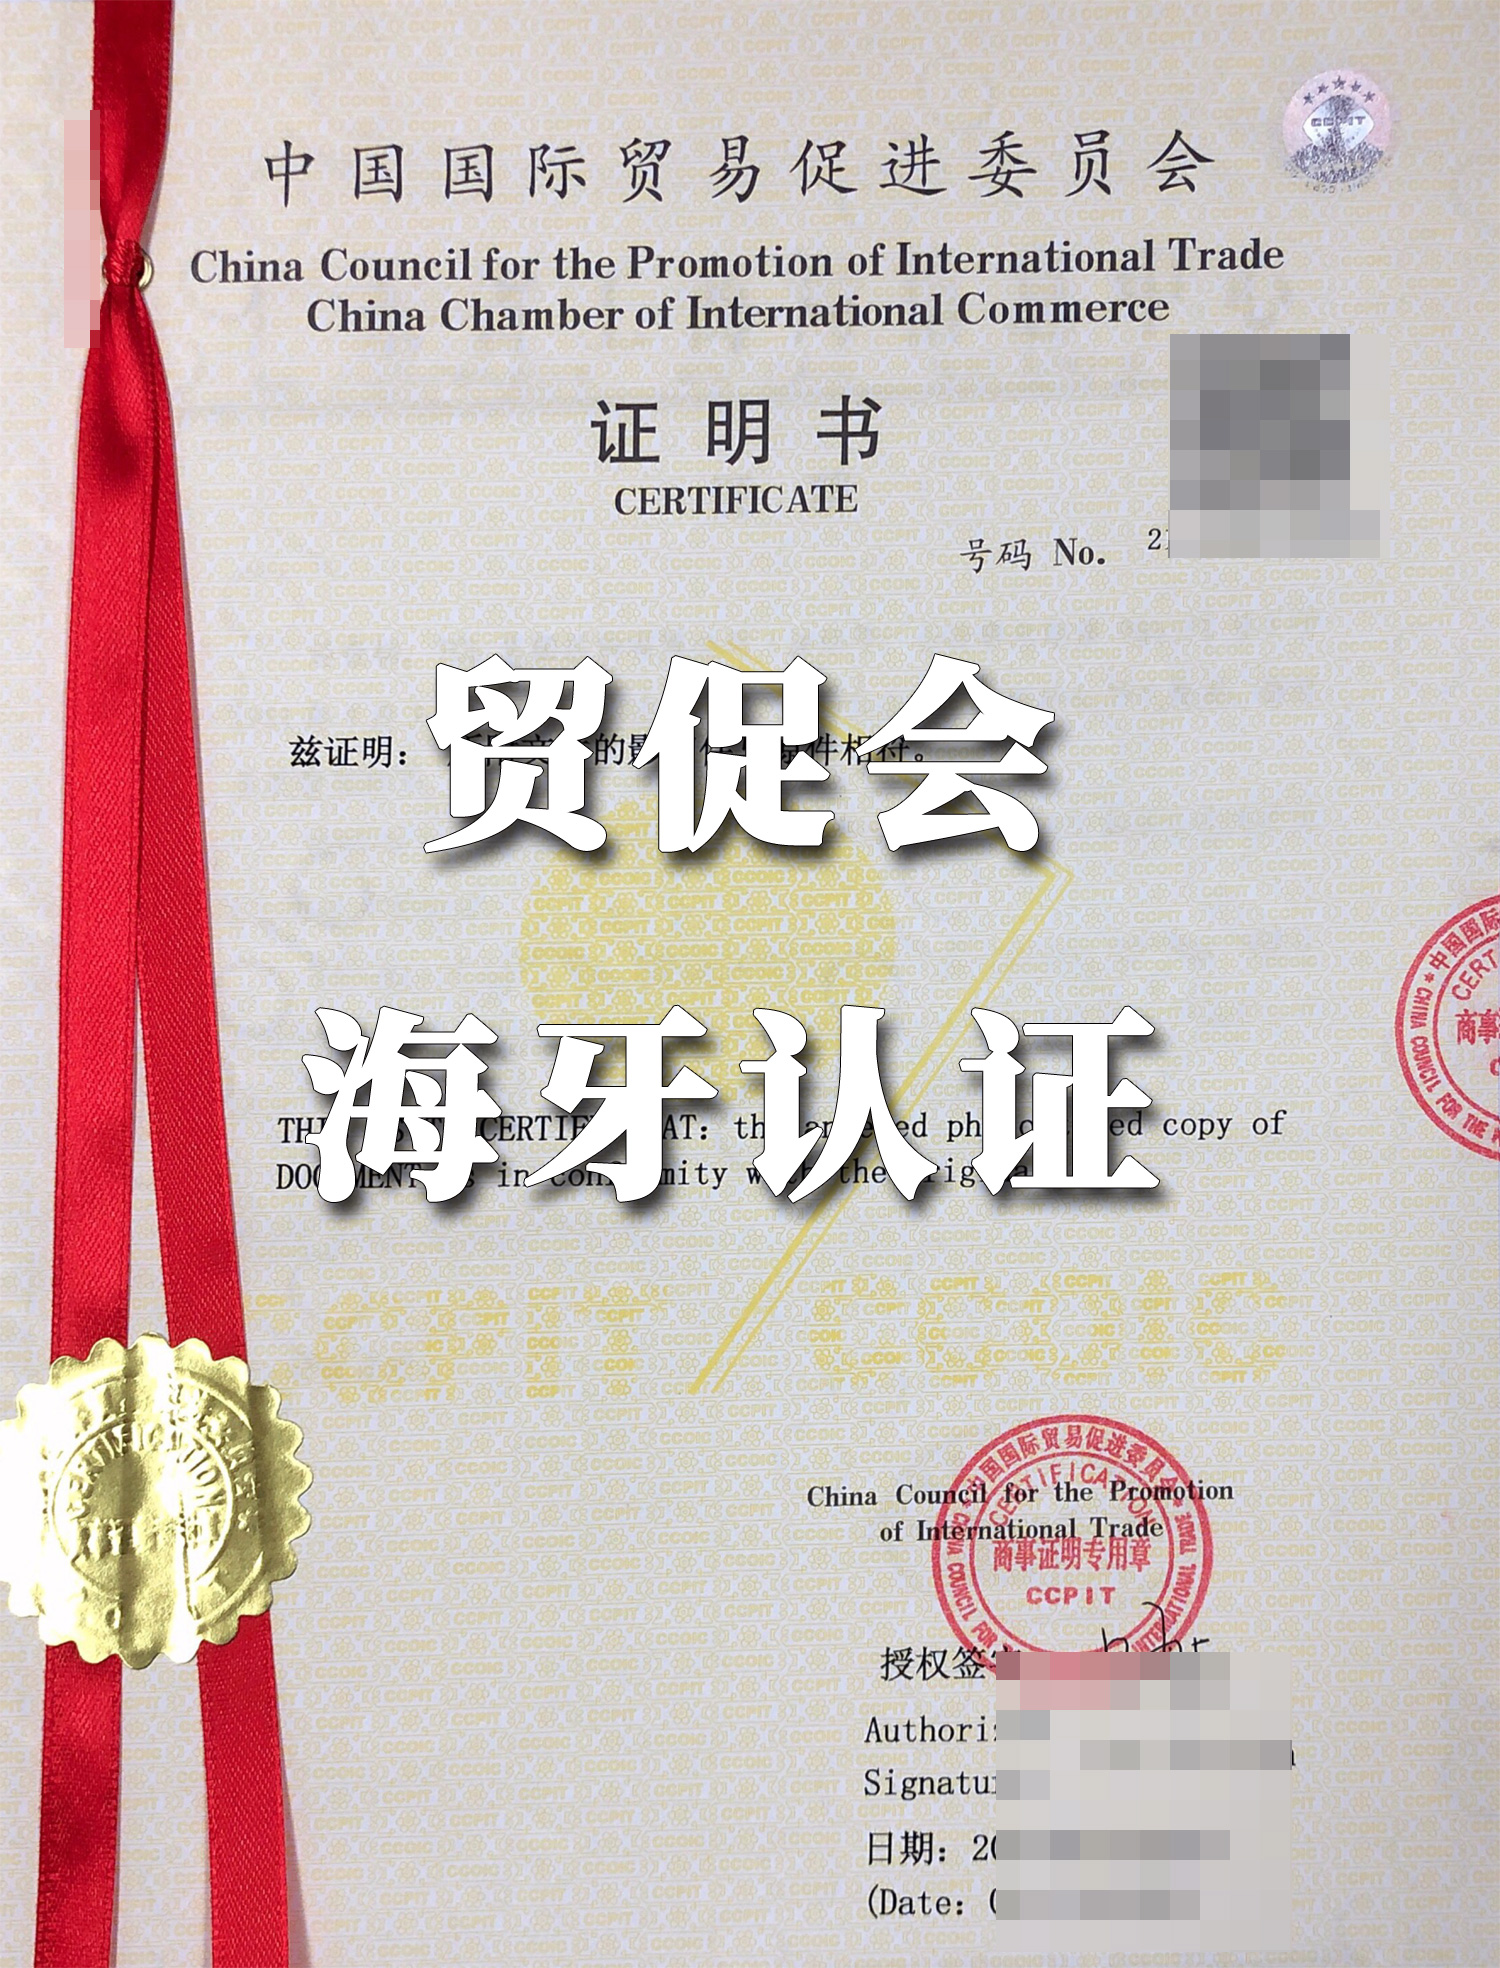 贸促会海牙认证是国际公证认证方式